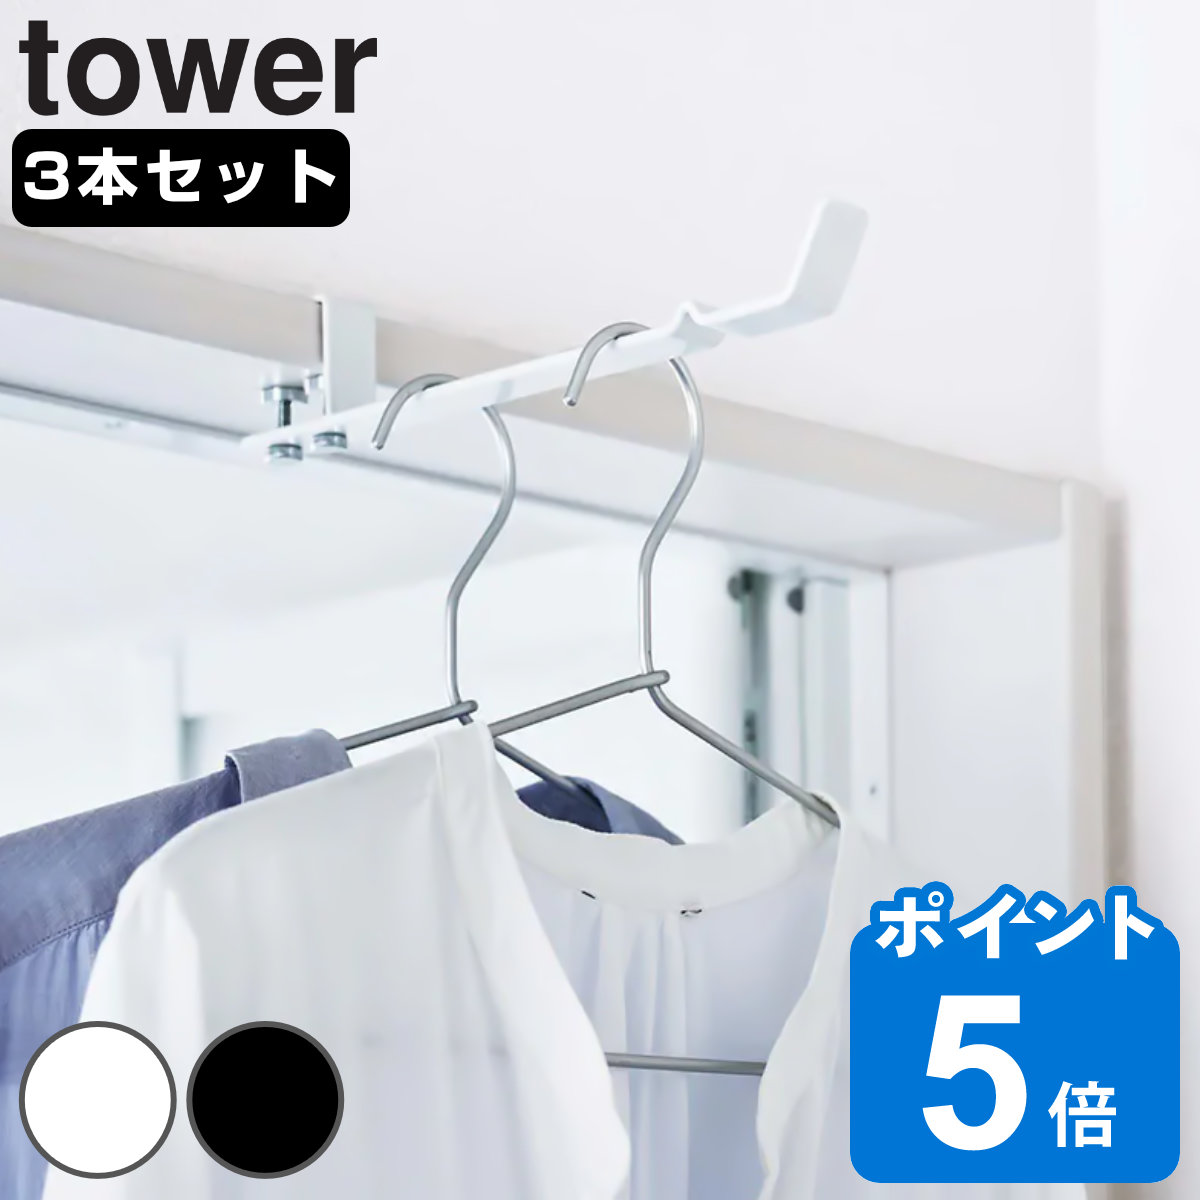 ランドリー室内干しハンガー タワー tower 3本セット 洗濯ハンガー